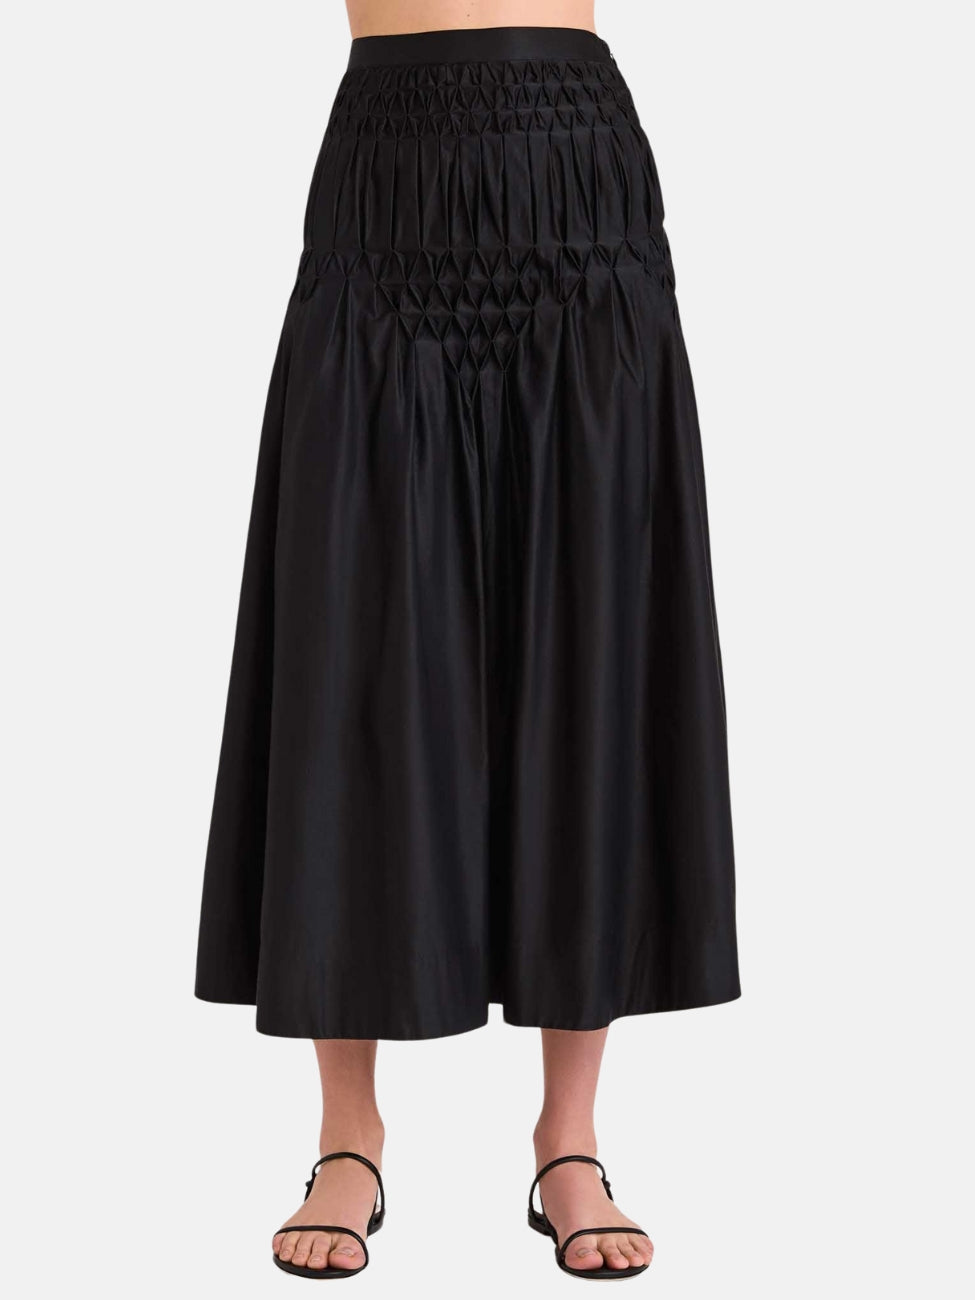 Nomade Skirt in Black